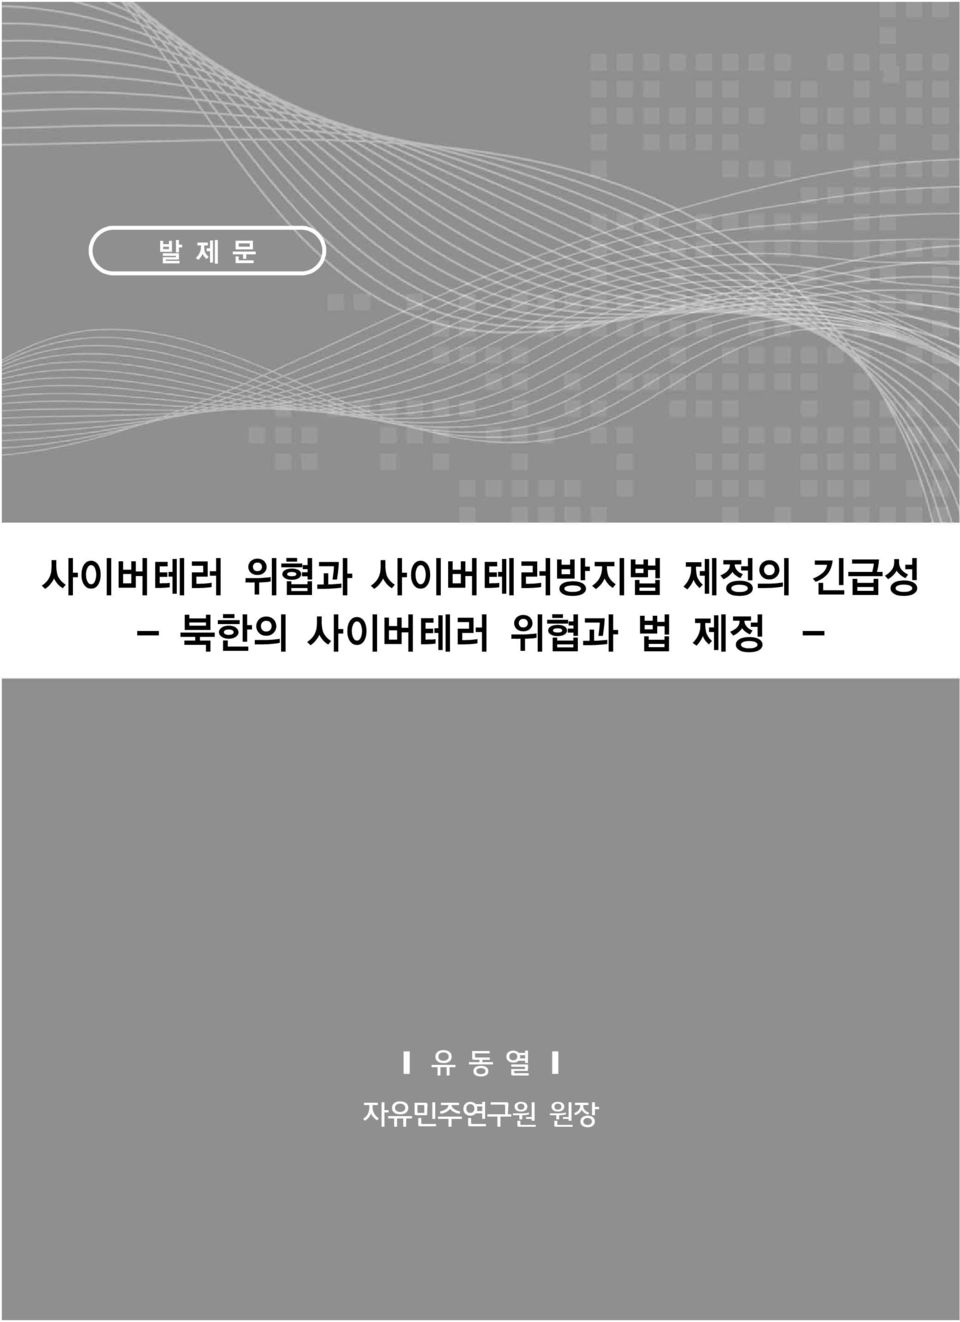 - 북한의 사이버테러 위협과 법